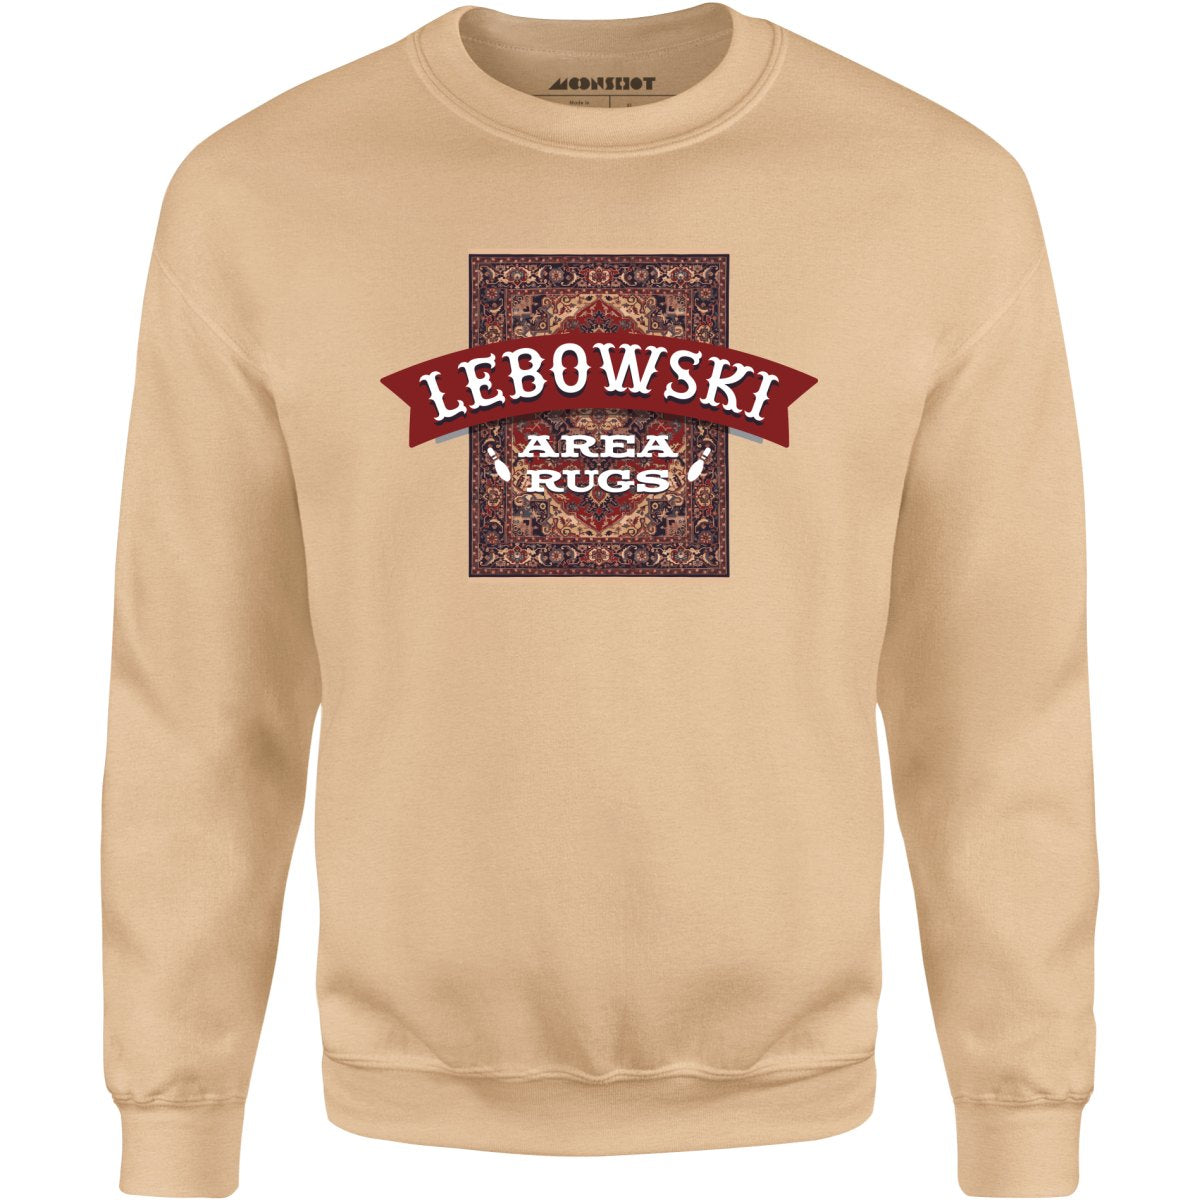 Lebowski Area Rugs - Unisex Sweatshirt